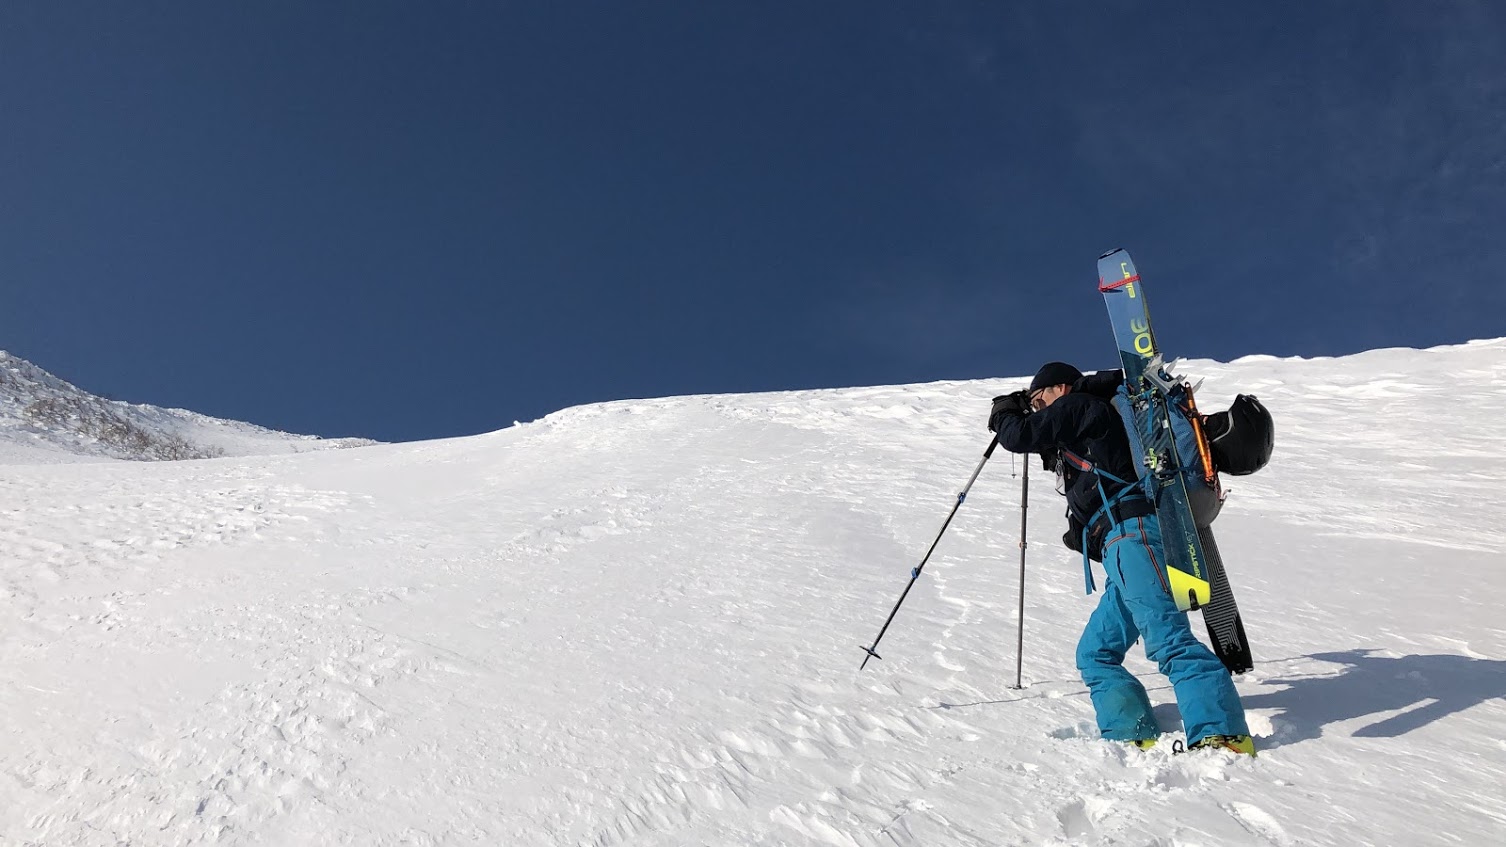 山のまこちゃん登山ブログ: 山スキー初心者にオススメなスキー板